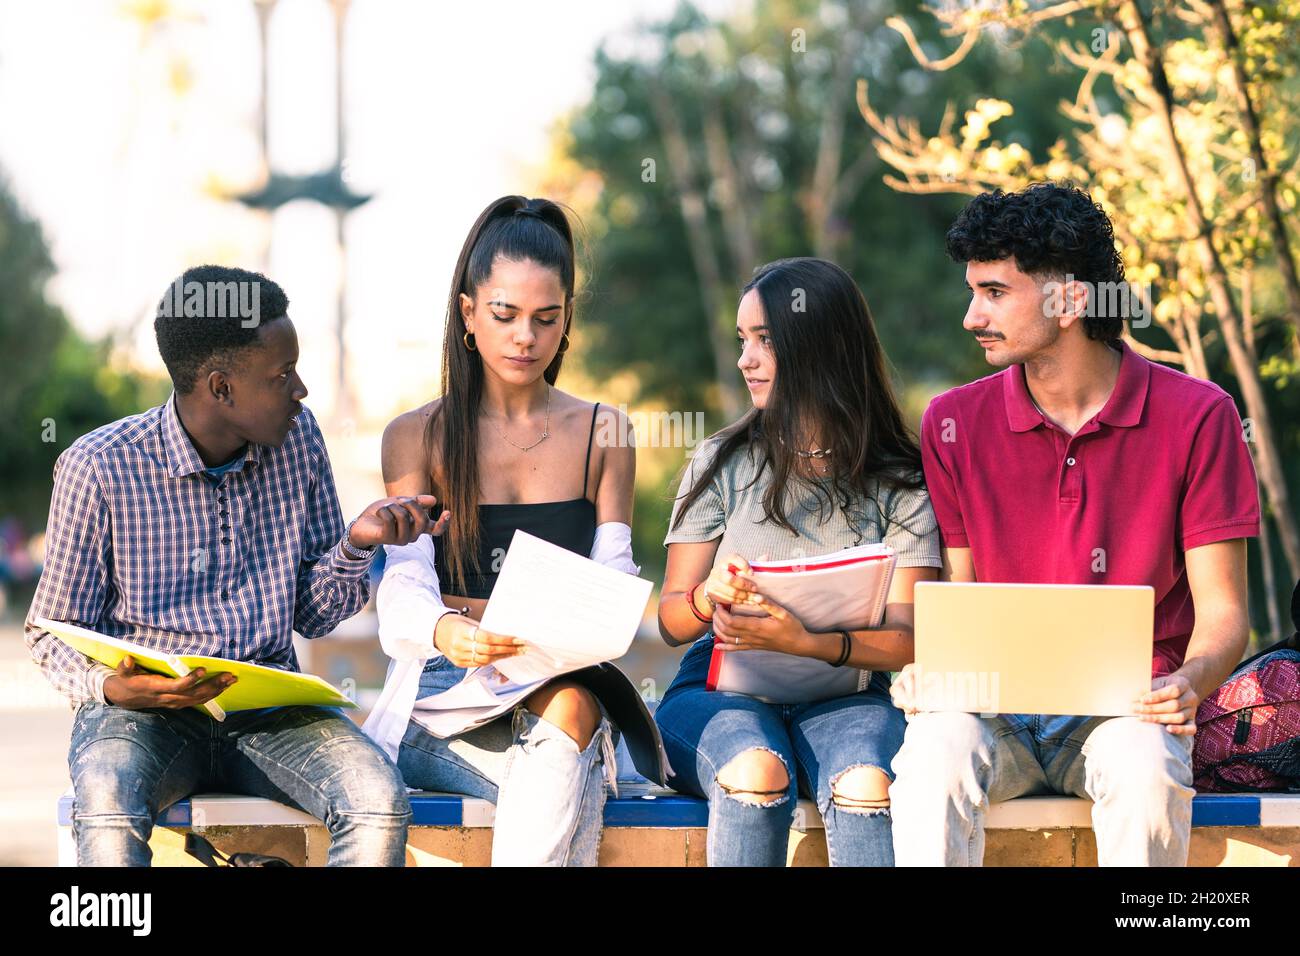 Groupe multiracial d'amis utilisant un ordinateur portable et étudiant en étant assis dans un parc Banque D'Images